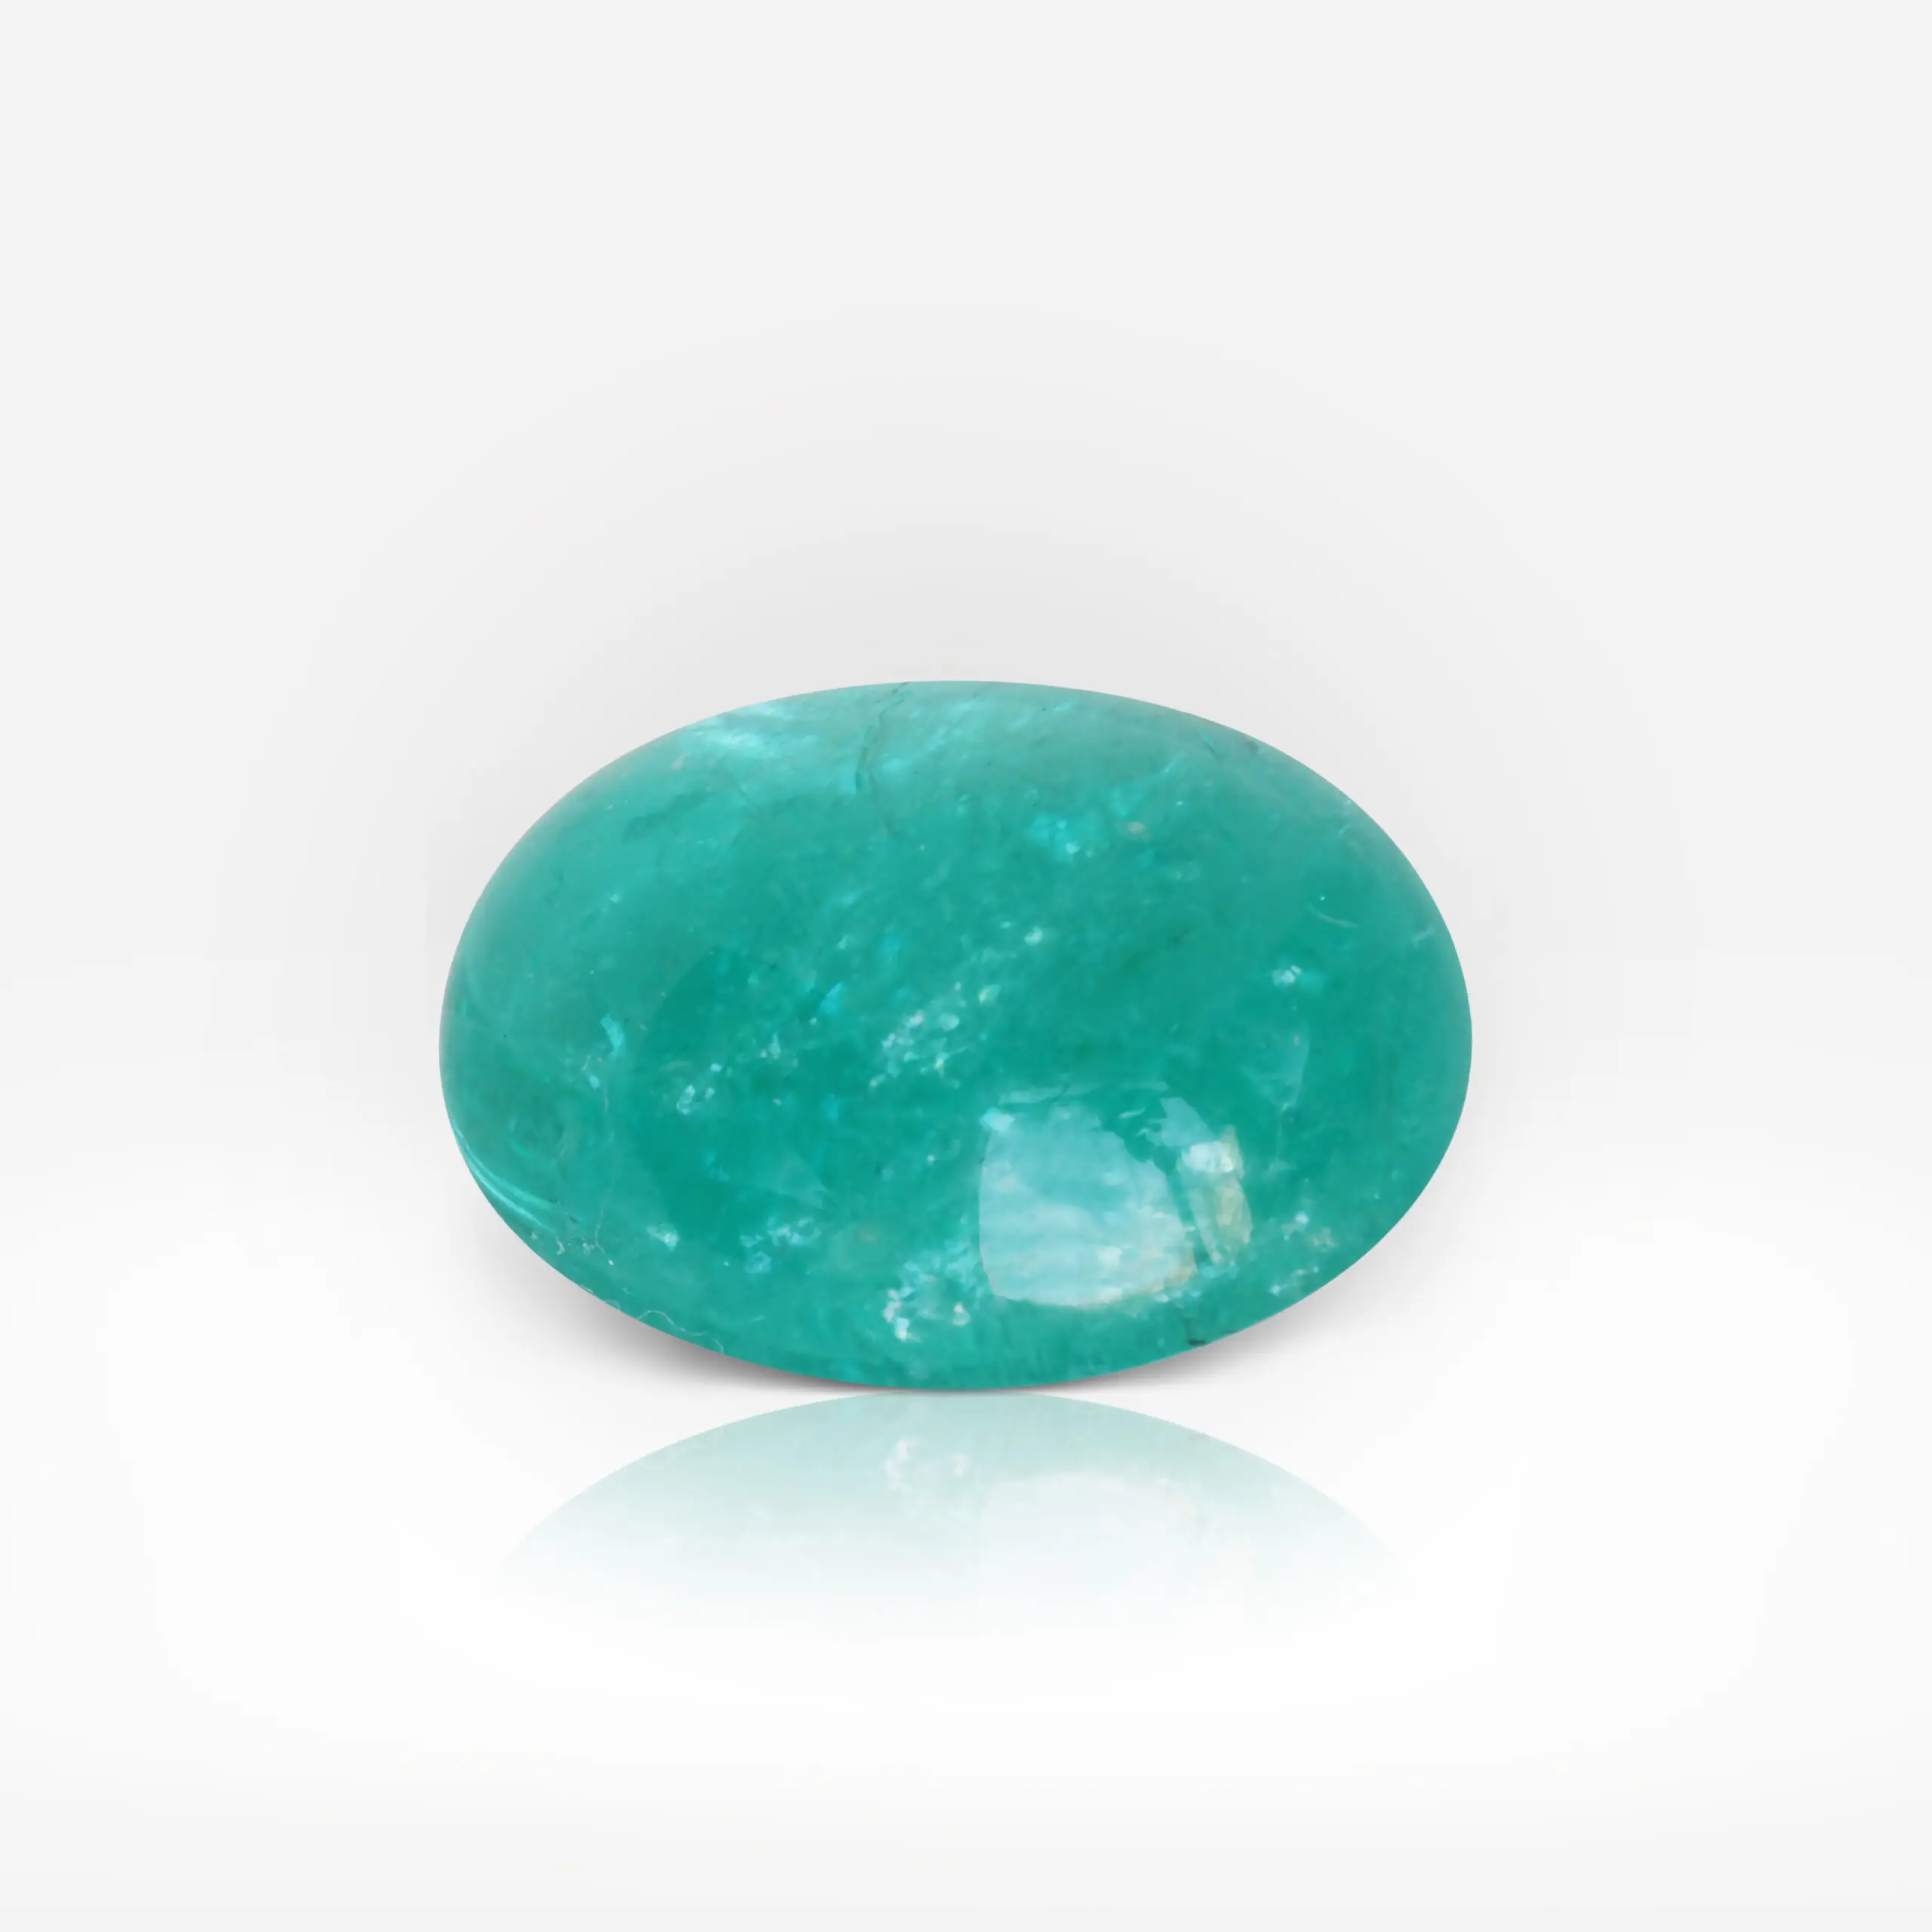 37.47 carat Cabuchon Shape Greenish Blue Paraíba Tourmaline - picture 1